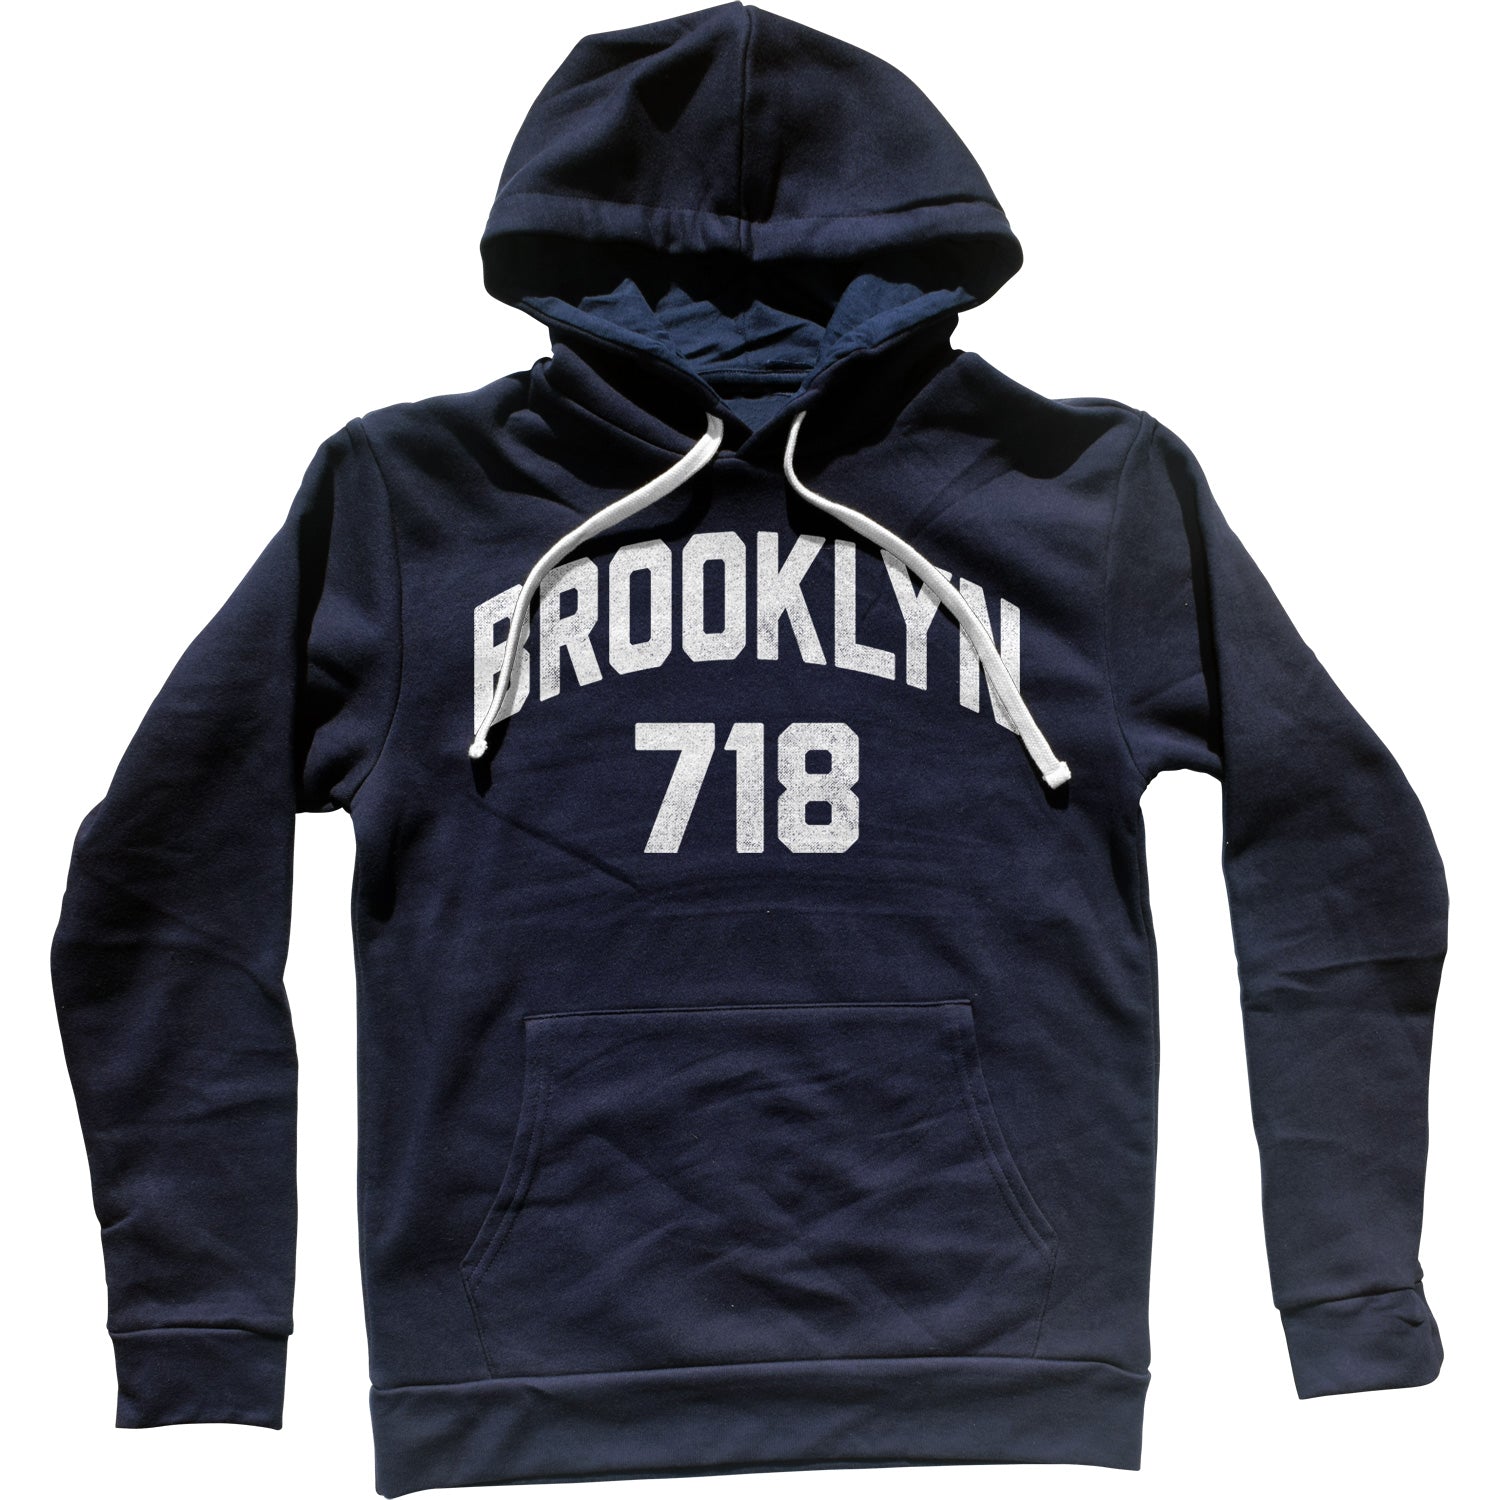 Brooklyn 718 Area Code Unisex Hoodie